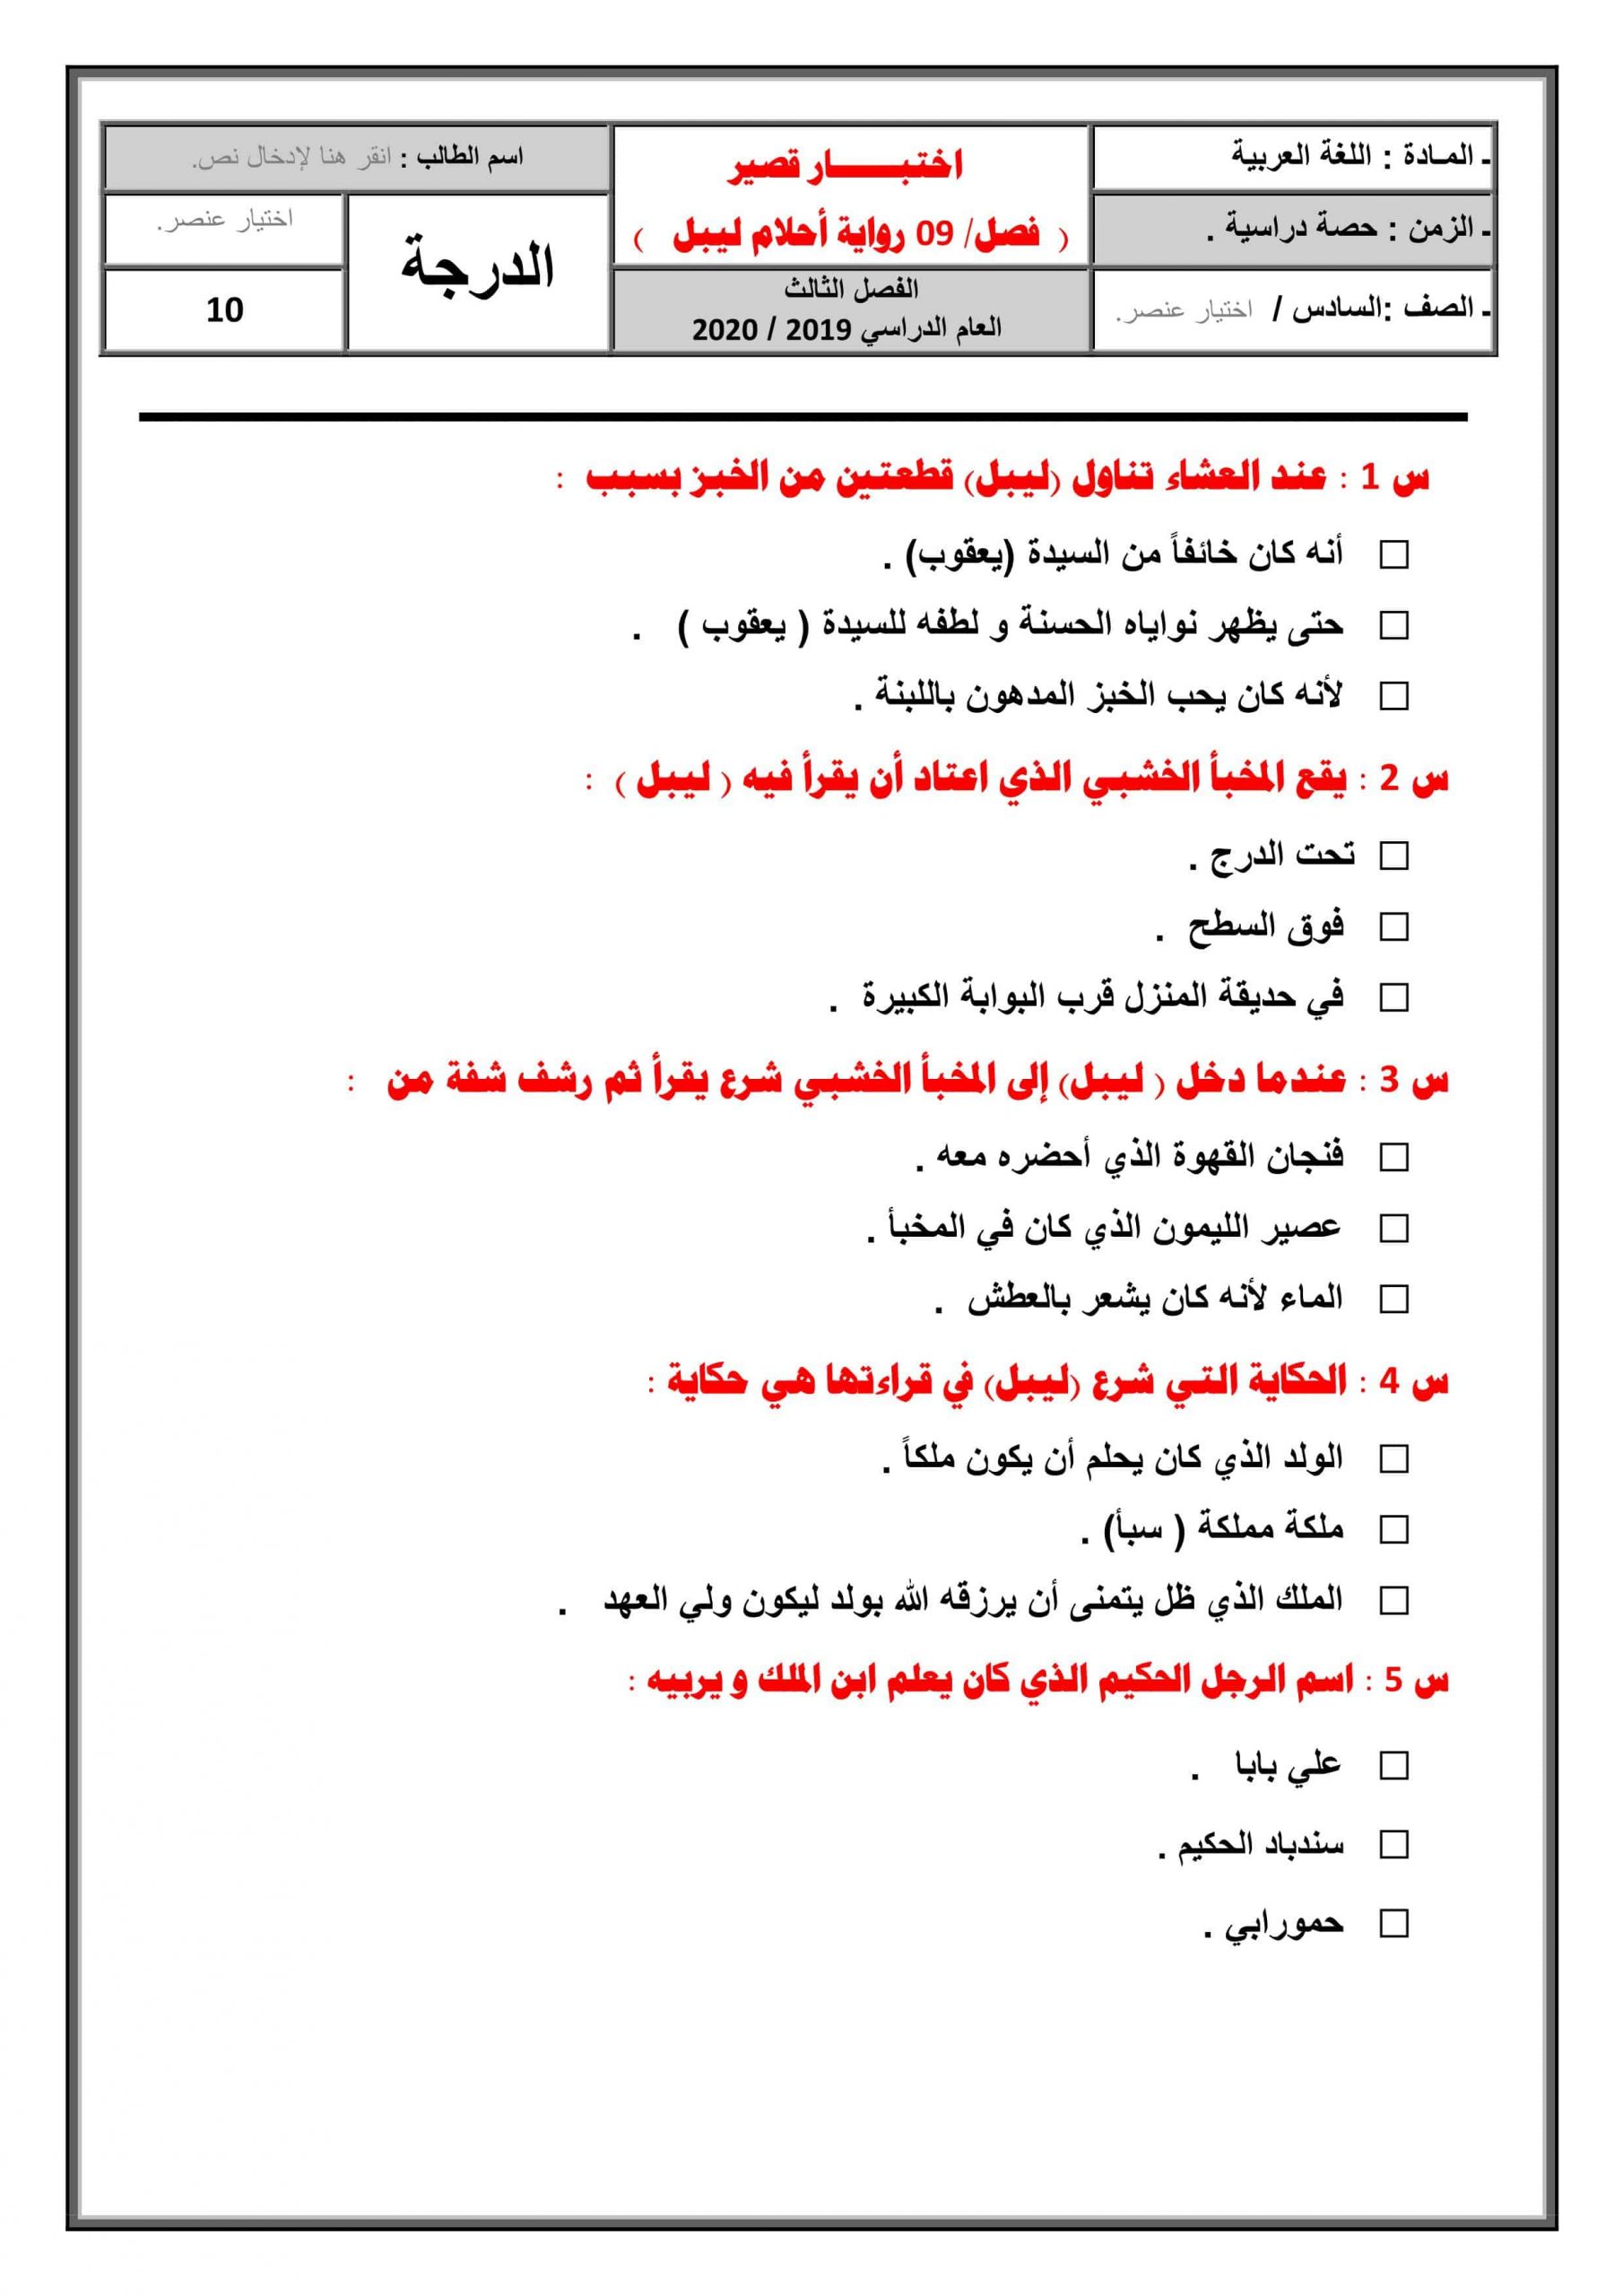 اختبار قصير لرواية أحلام ليبل السعيدة الفصل التاسع الصف السادس مادة اللغة العربية